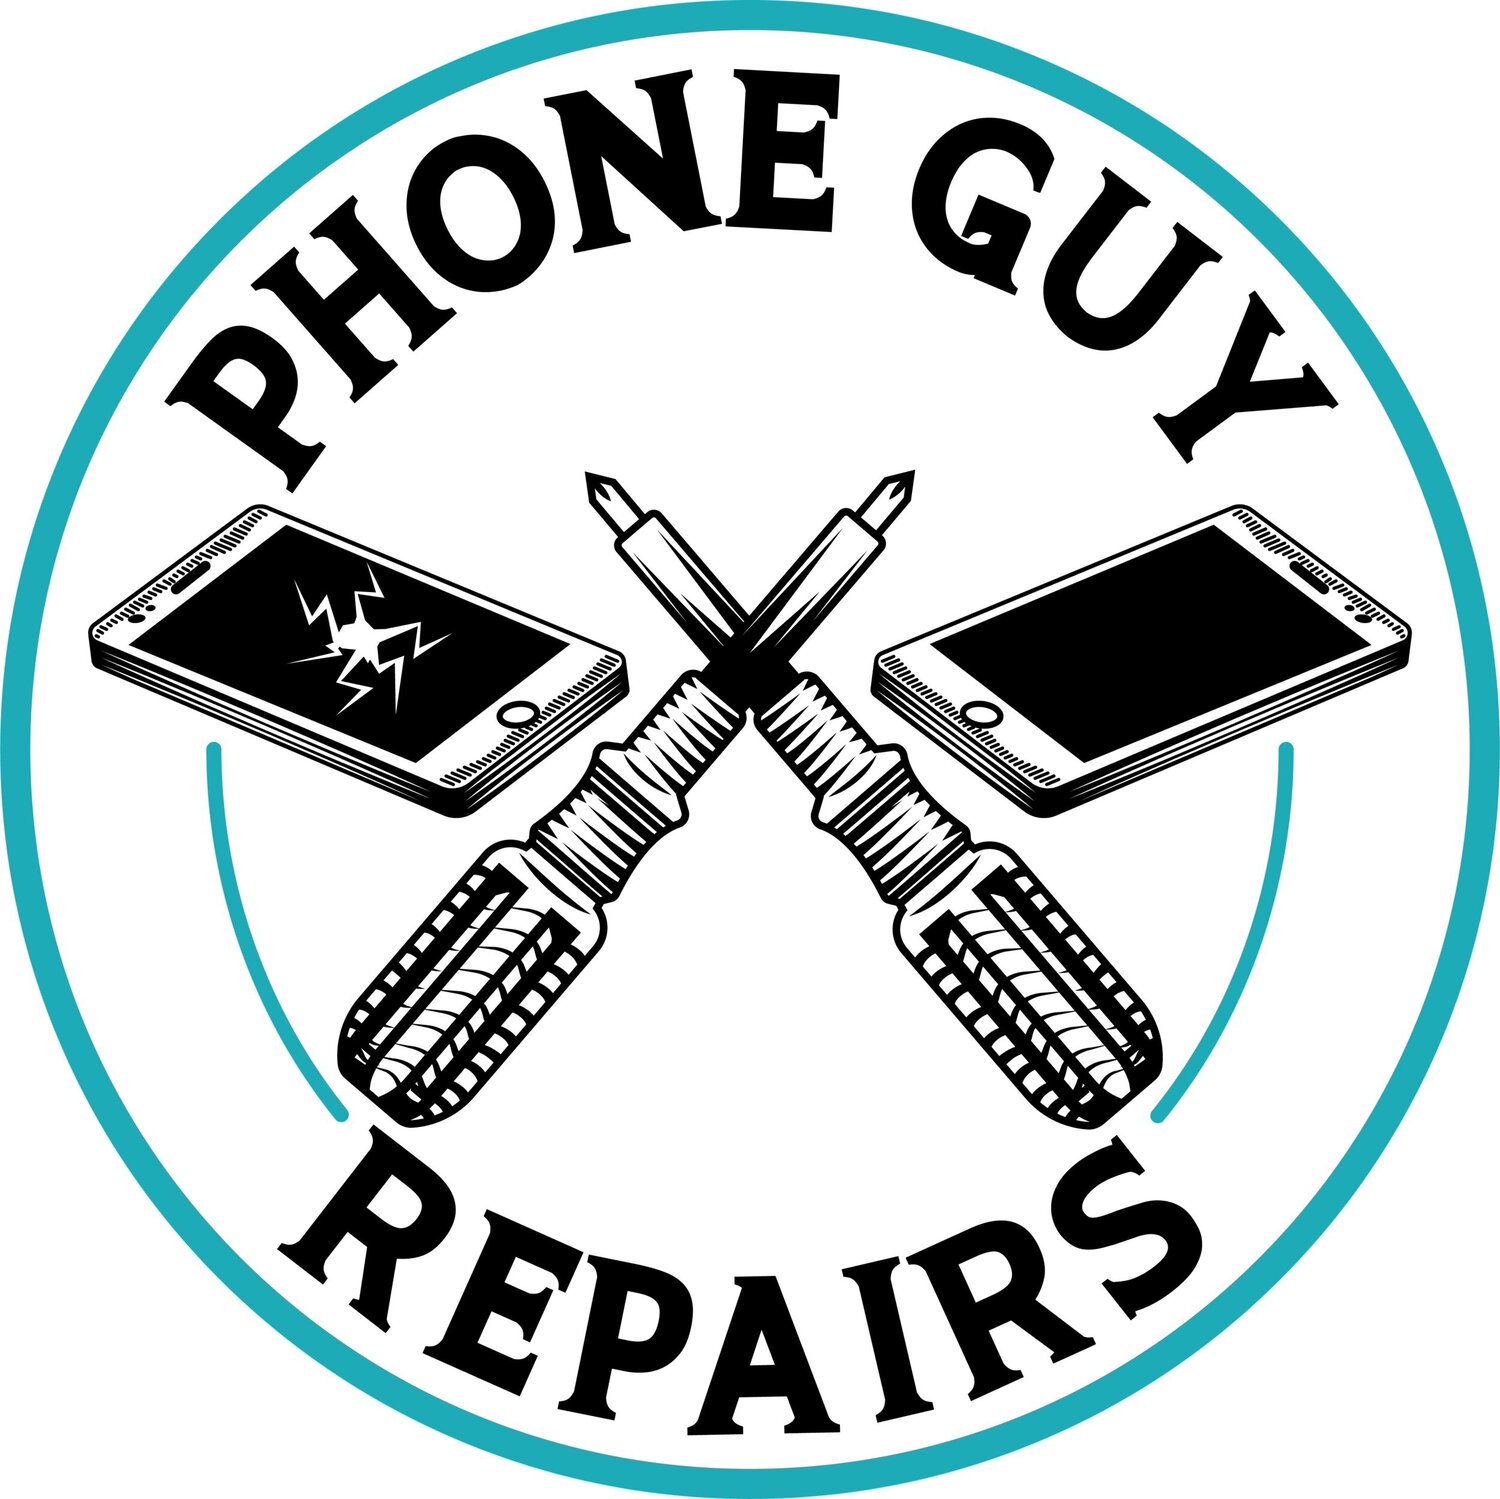 Phone Guy Repairs - Central NJ